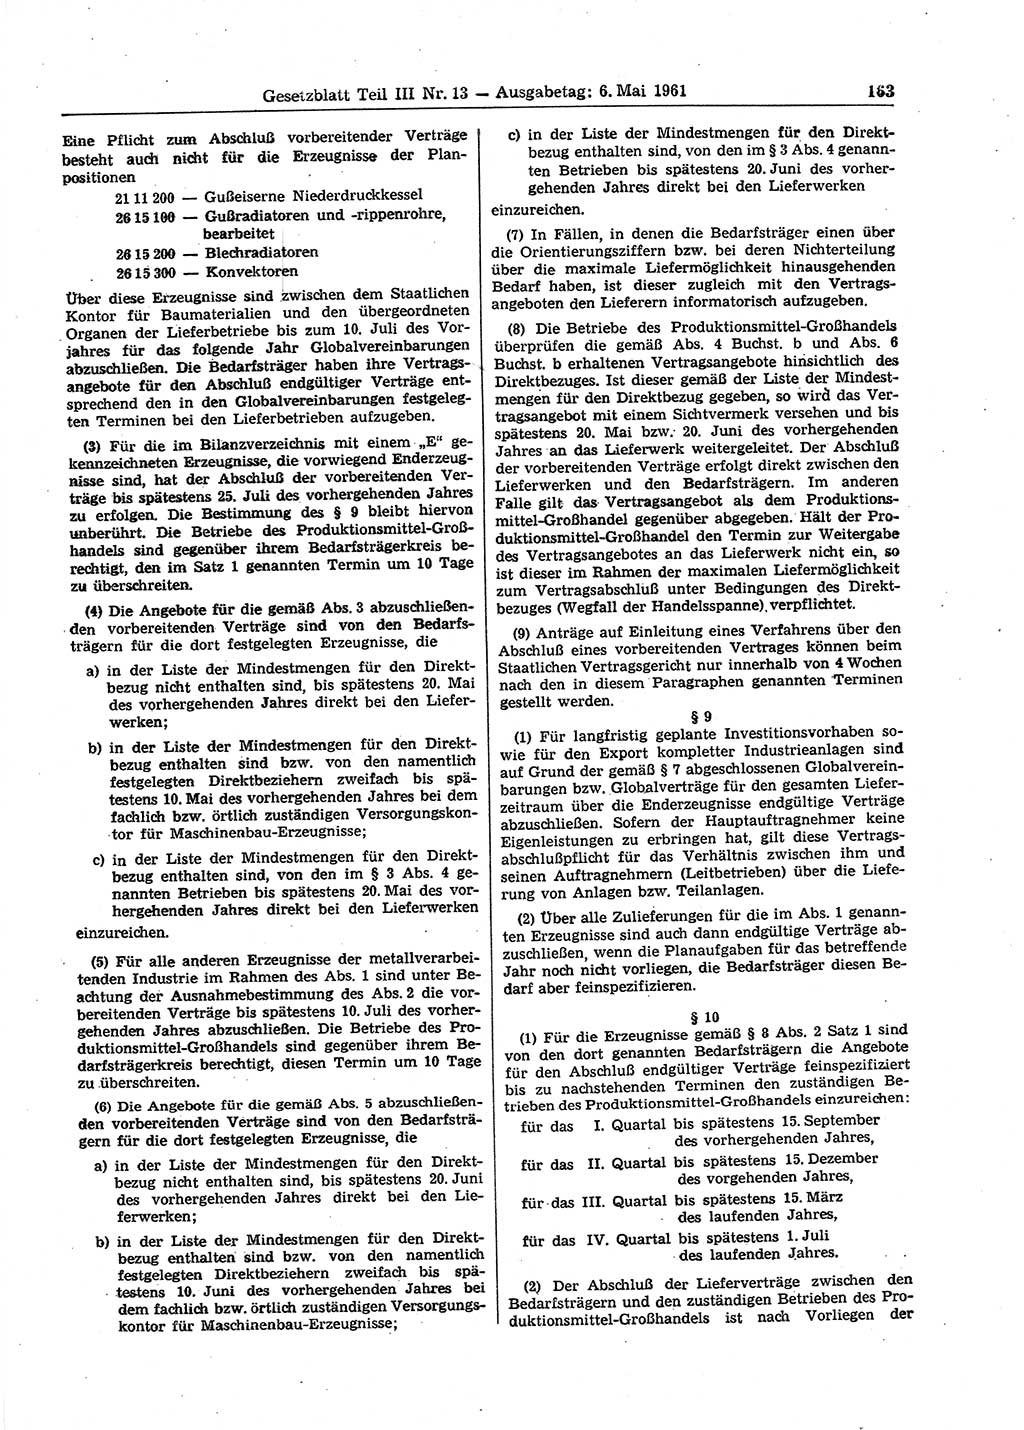 Gesetzblatt (GBl.) der Deutschen Demokratischen Republik (DDR) Teil ⅠⅠⅠ 1961, Seite 163 (GBl. DDR ⅠⅠⅠ 1961, S. 163)